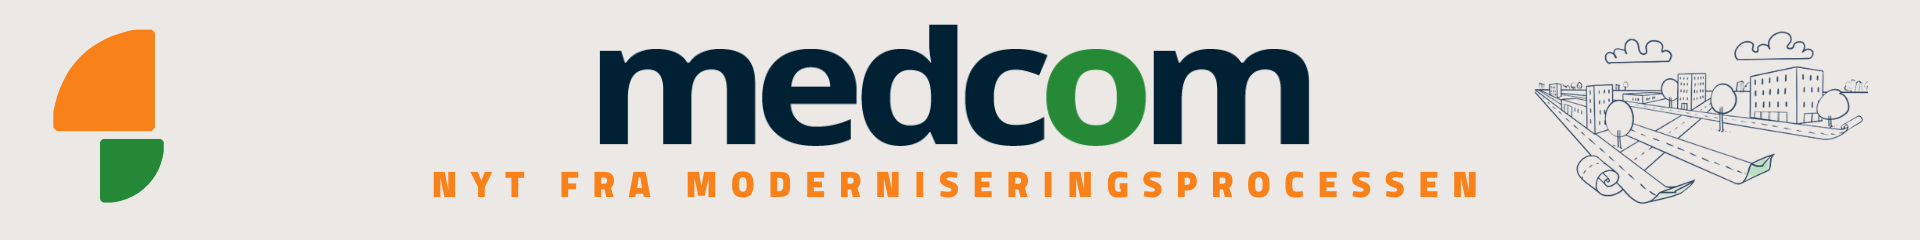 MedCom-logo